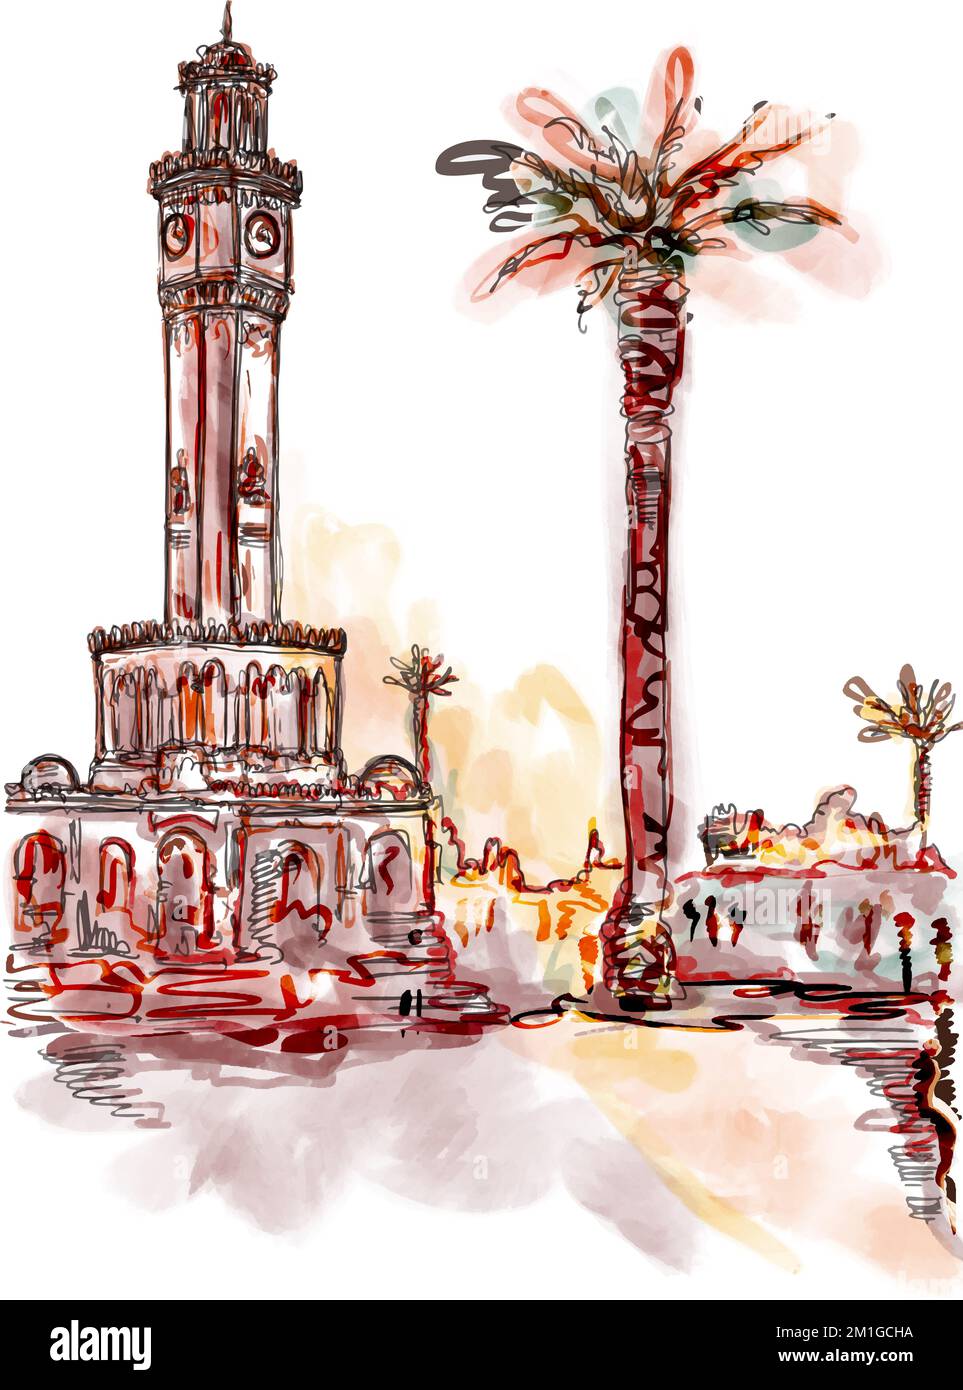 Handgezeichnete Farbrasterskizze der Konak Promenade in Izmir, Türkei. Vorderansicht des Izmir Uhrenturms, Wahrzeichen der Türkei. Abstrakte Illustration Stockfoto